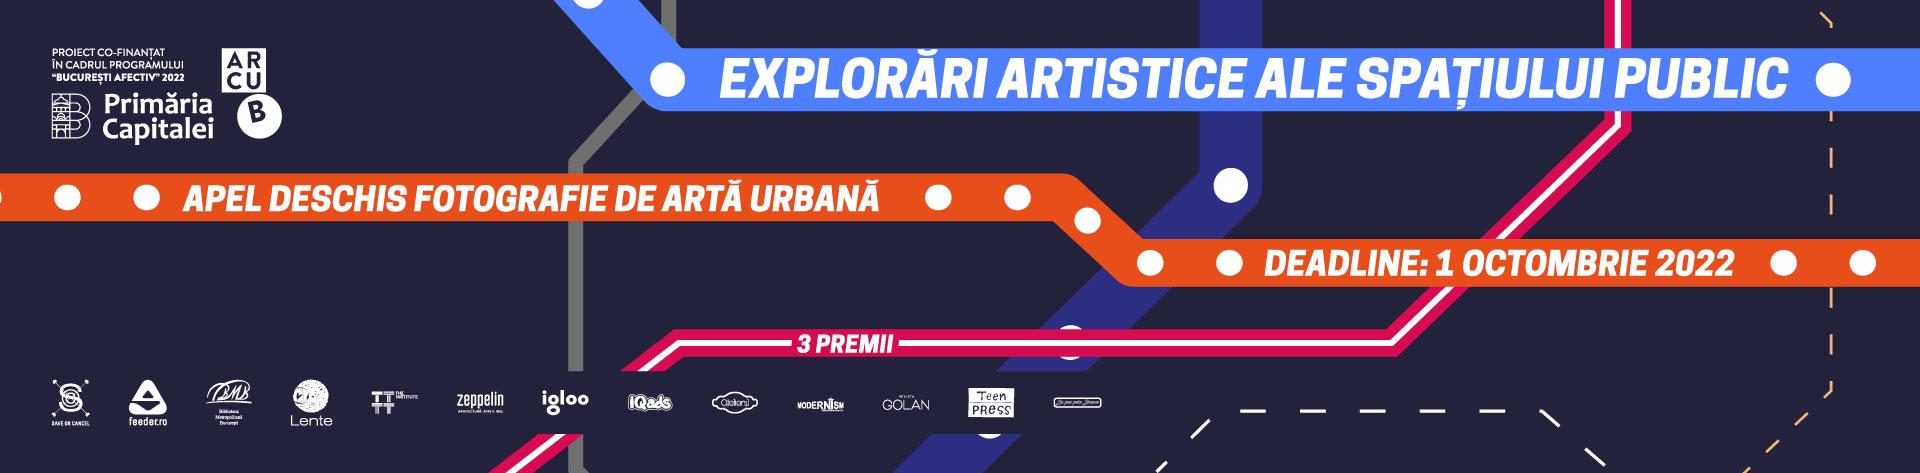 Apel deschis pentru fotografii de artă urbană din București / Explorări artistice ale spațiului public